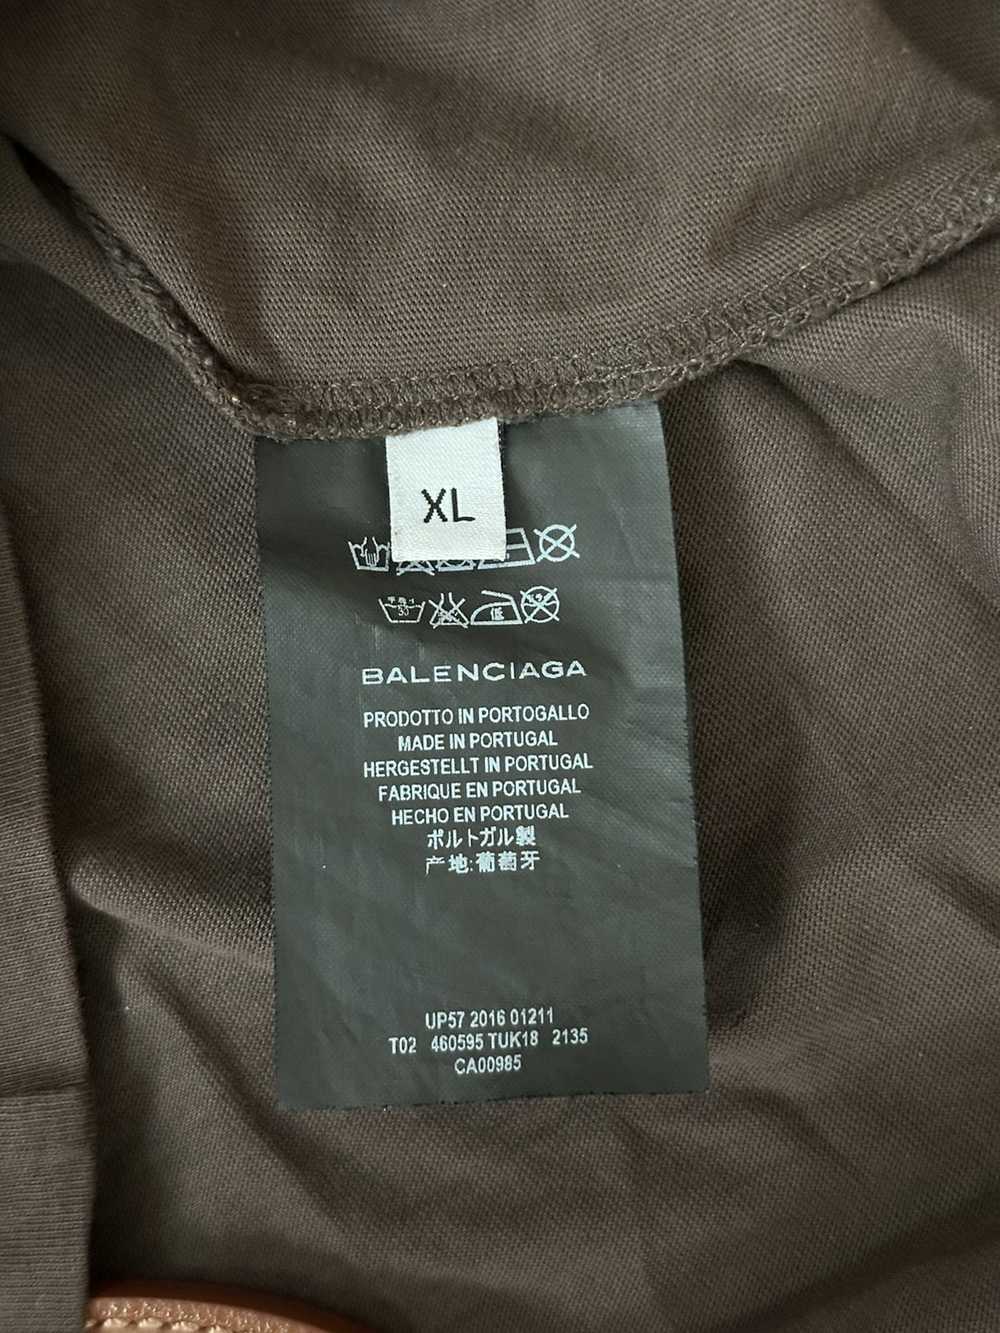 Balenciaga Balenciaga Unisex Size (XL) T-Shirt - image 6